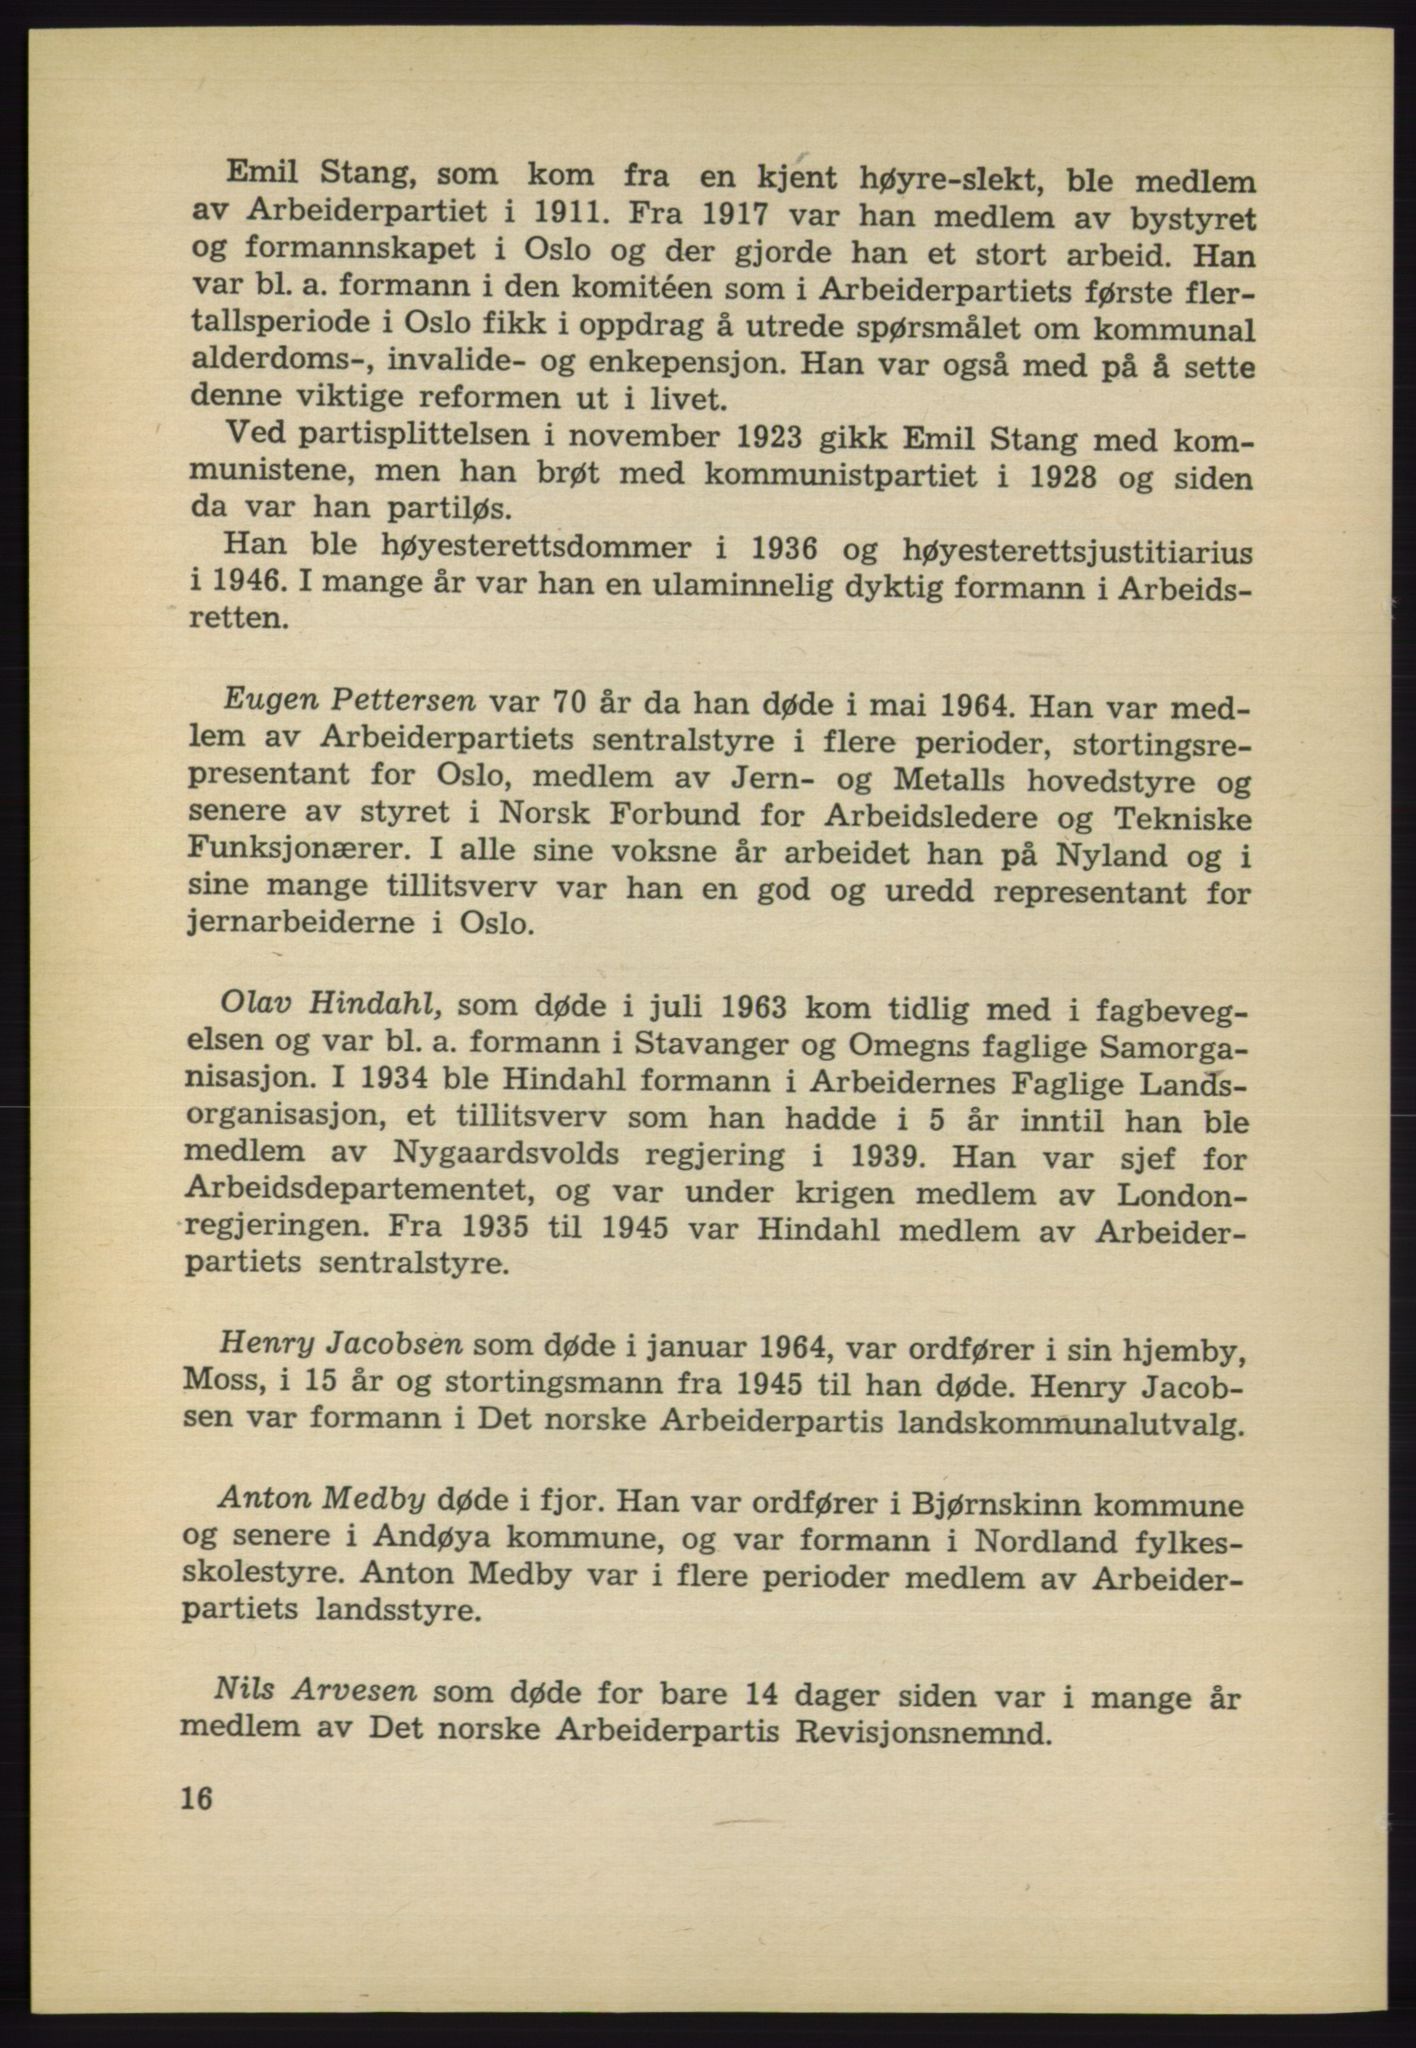 Det norske Arbeiderparti - publikasjoner, AAB/-/-/-: Protokoll over forhandlingene på det 40. ordinære landsmøte 27.-29. mai 1965 i Oslo, 1965, s. 16